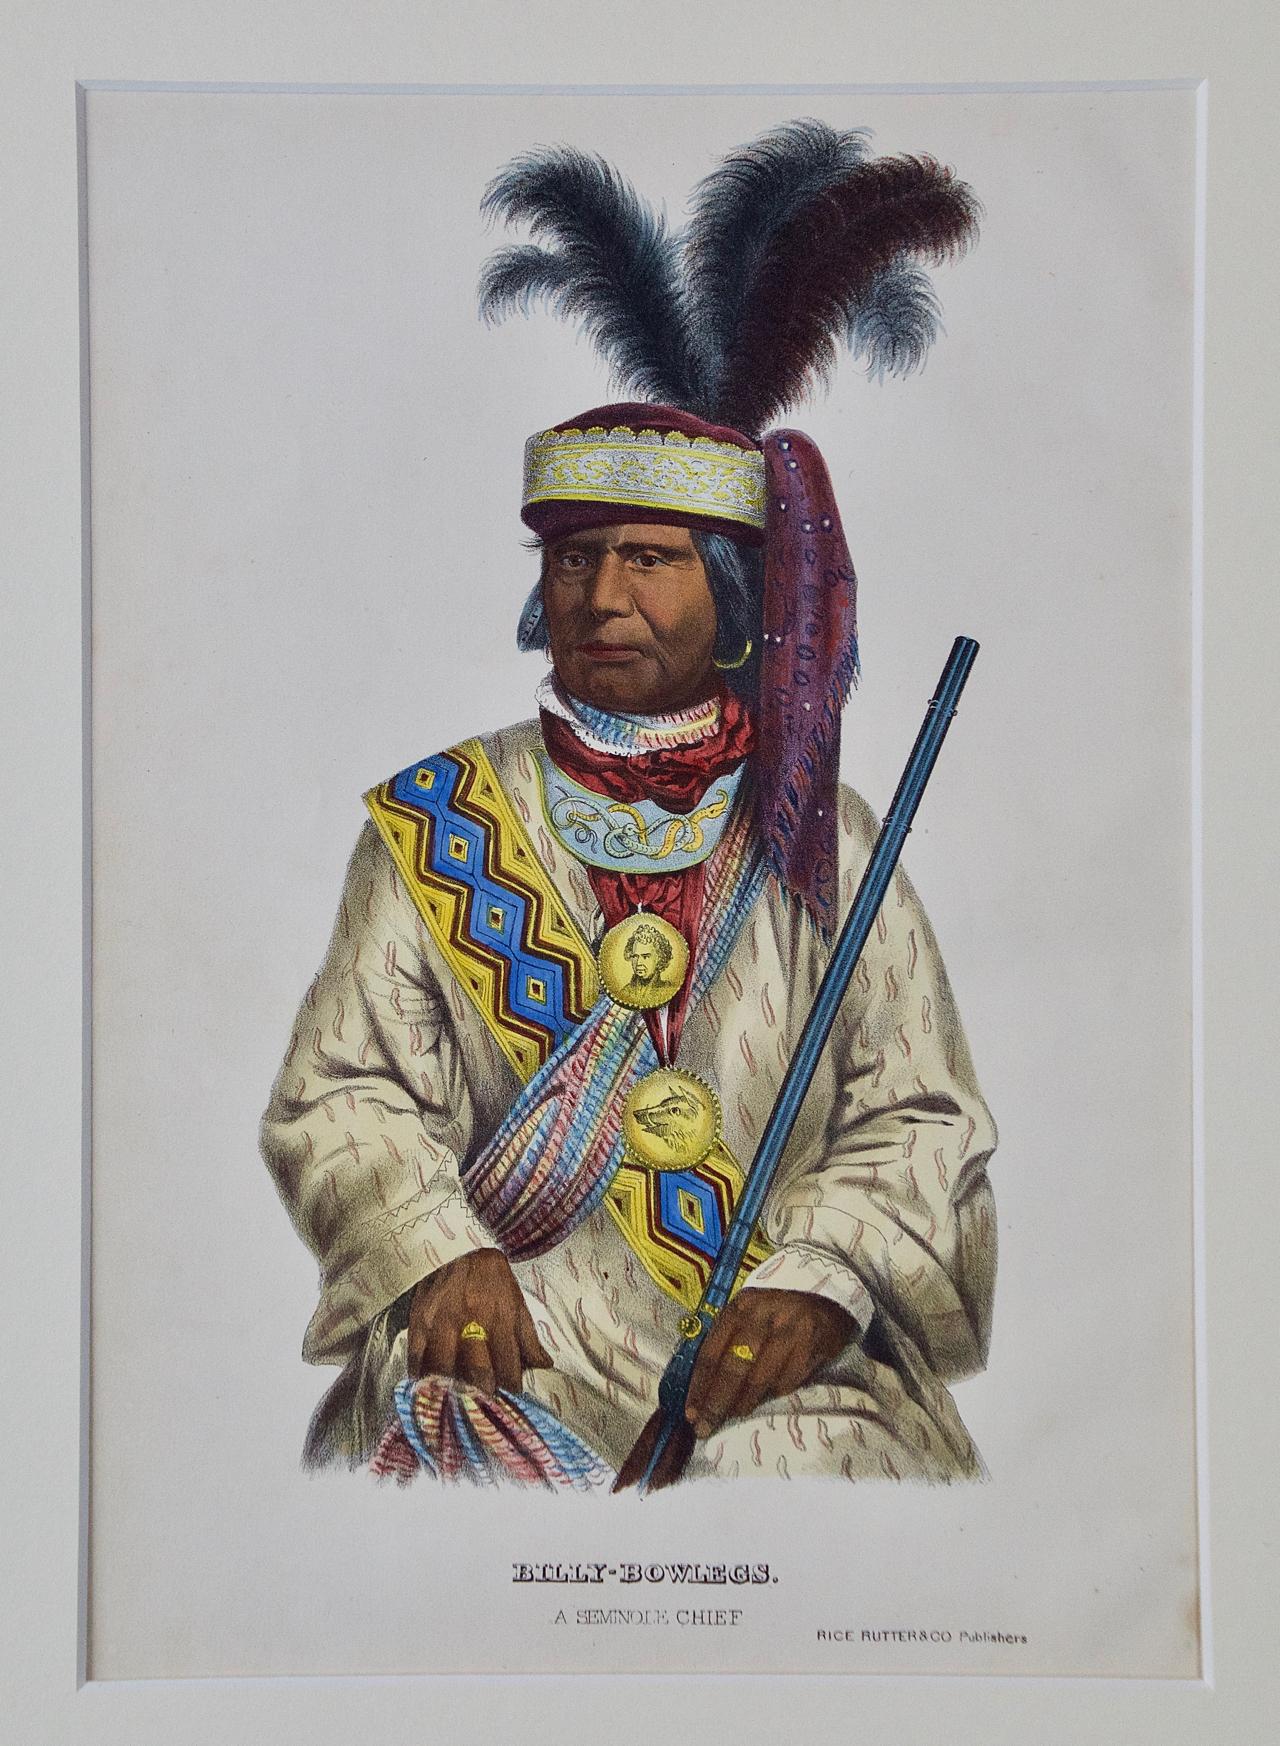 Dies ist ein originales handkoloriertes lithografisches Porträt eines amerikanischen Ureinwohners aus dem 19. Jahrhundert von McKenney und Hall mit dem Titel "Billy Bowlegs, A Seminole Chief", veröffentlicht von Rice, Rutter & Co. im Jahr 1865. Dies